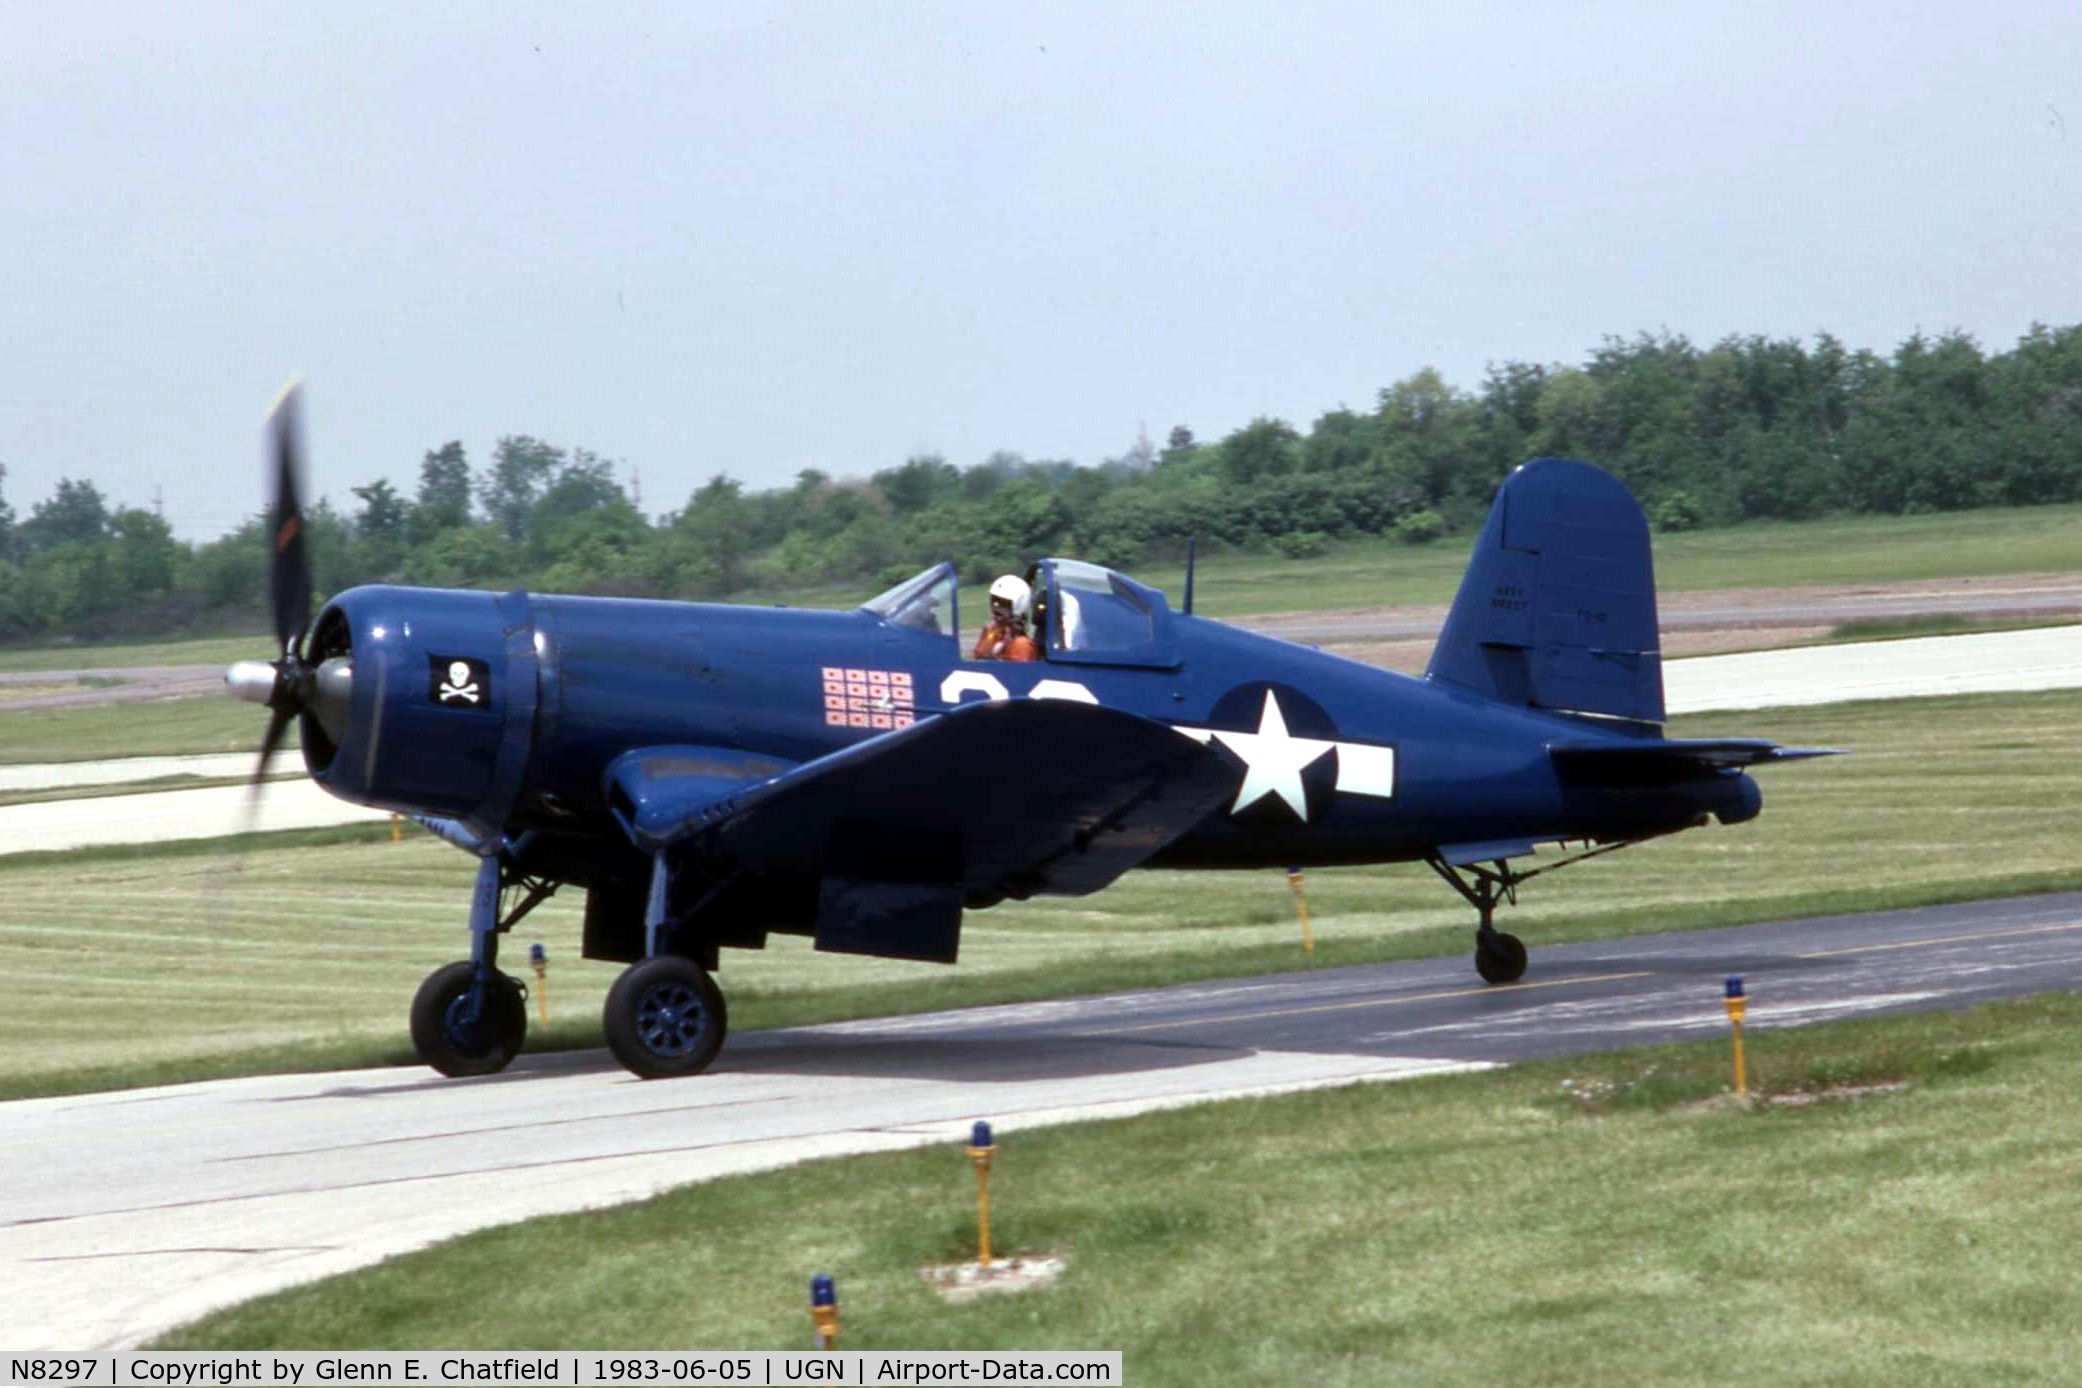 N8297, 1945 Goodyear FG-1D Corsair C/N 3111, Old paint scheme when still N8297